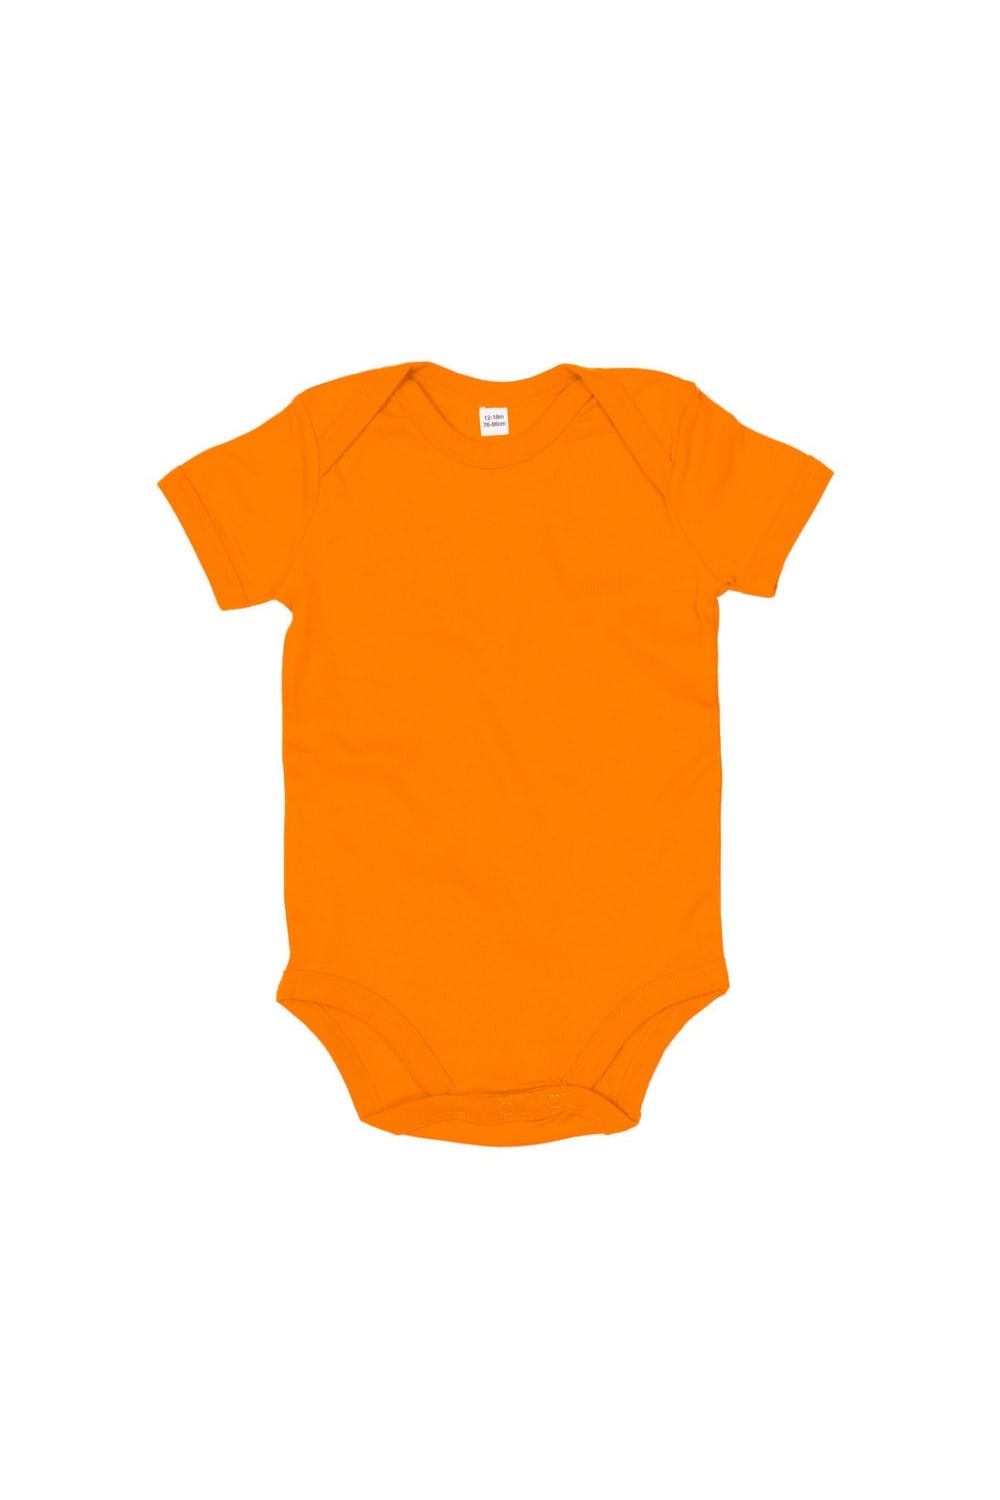 Babybugz Baby Onesie / Baby And Toddlerwear (Orange)